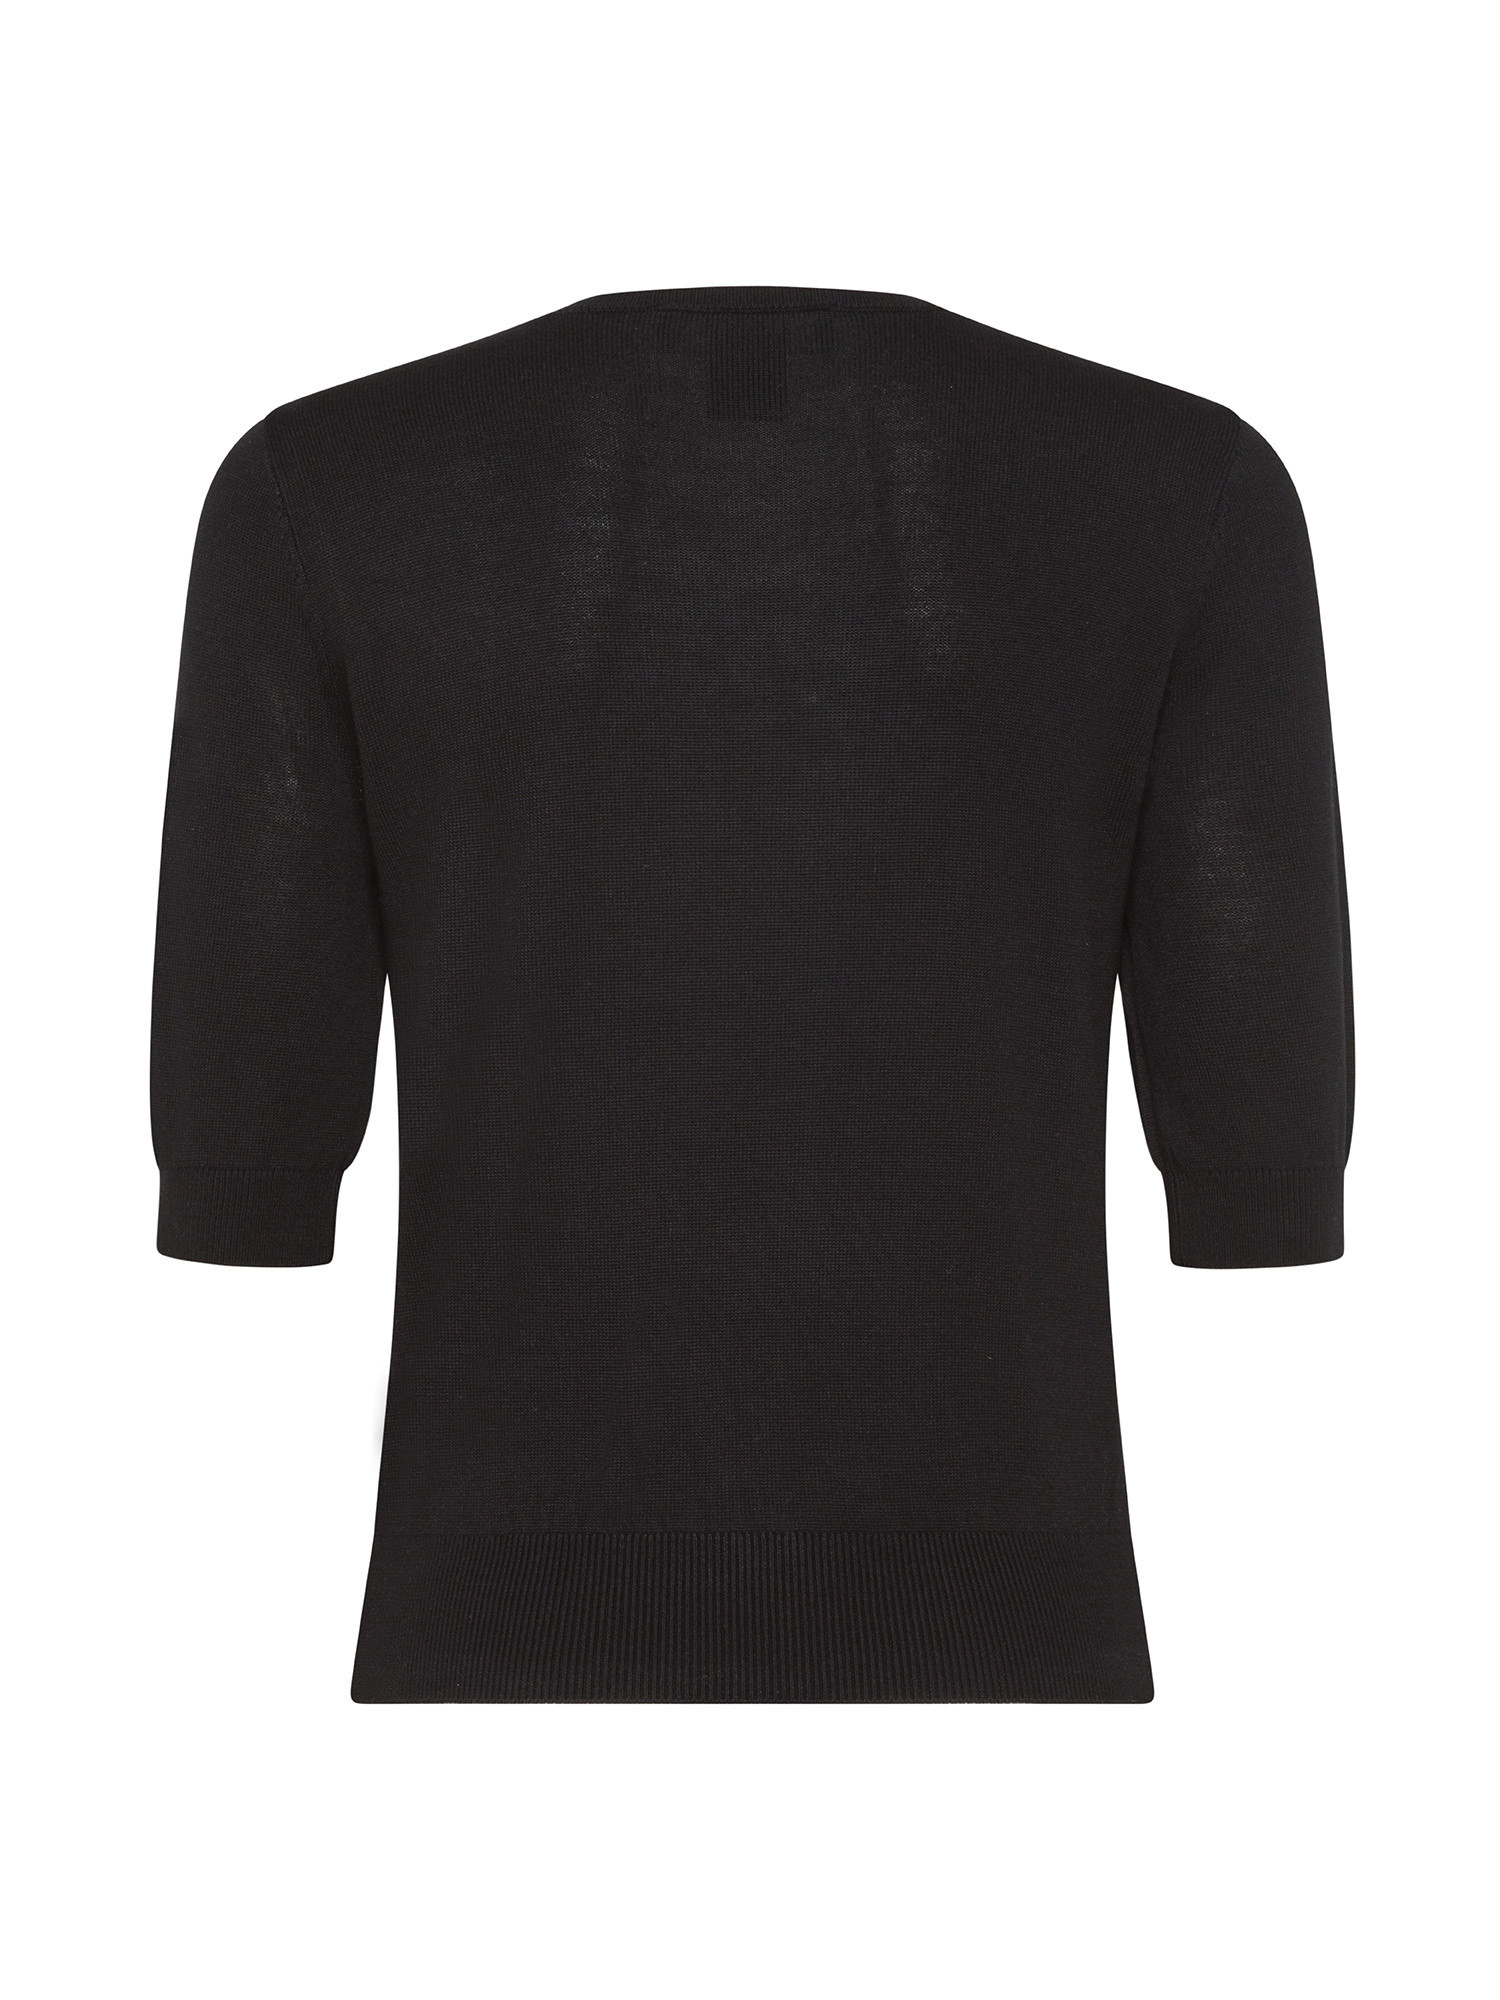 DKNY - V-neck sweater, Black, large image number 1